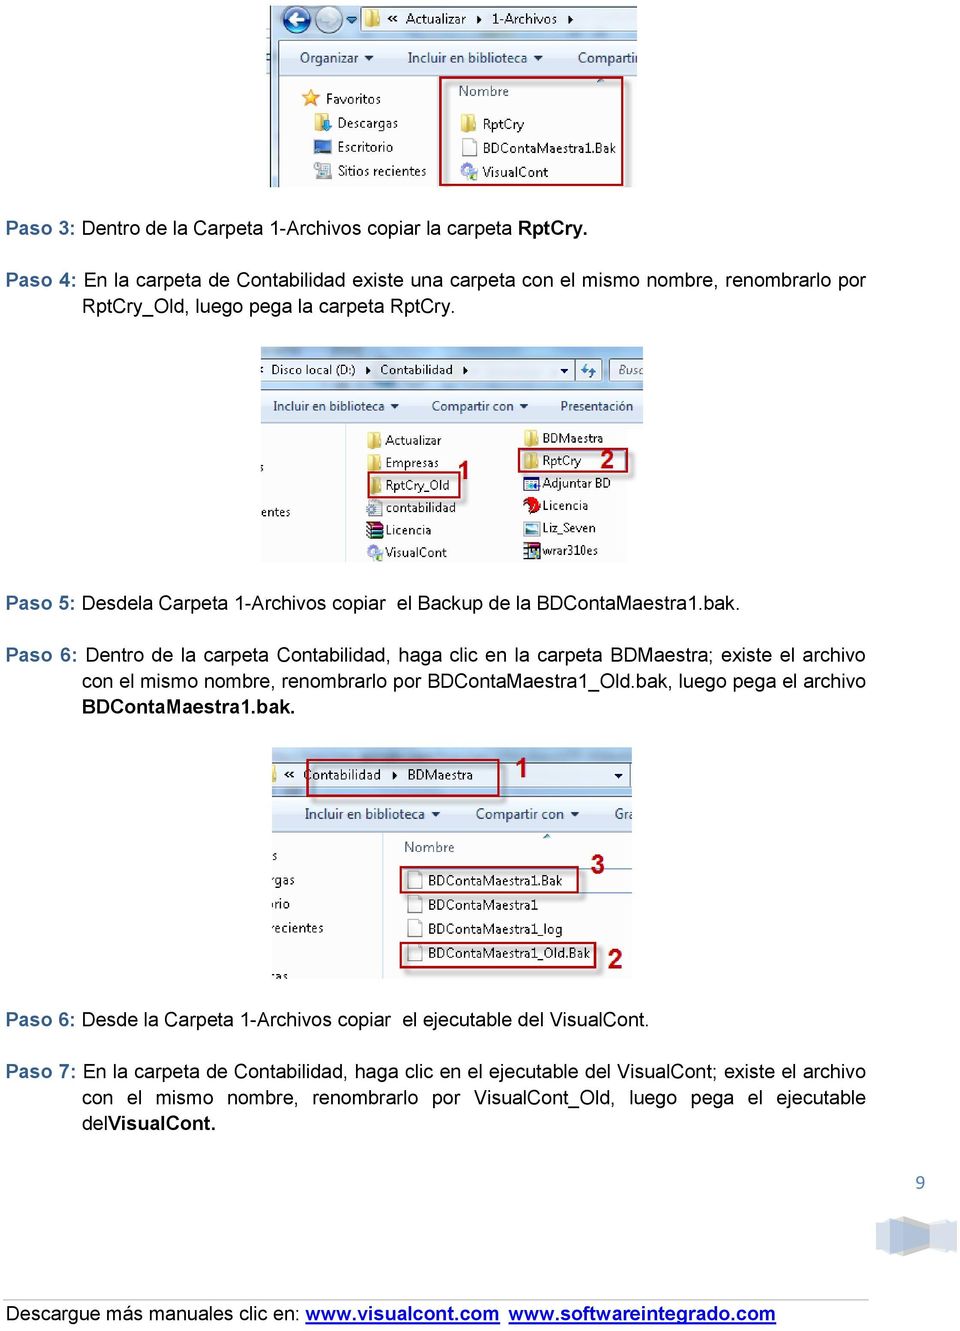 Paso 5: Desdela Carpeta 1-Archivos copiar el Backup de la BDContaMaestra1.bak.